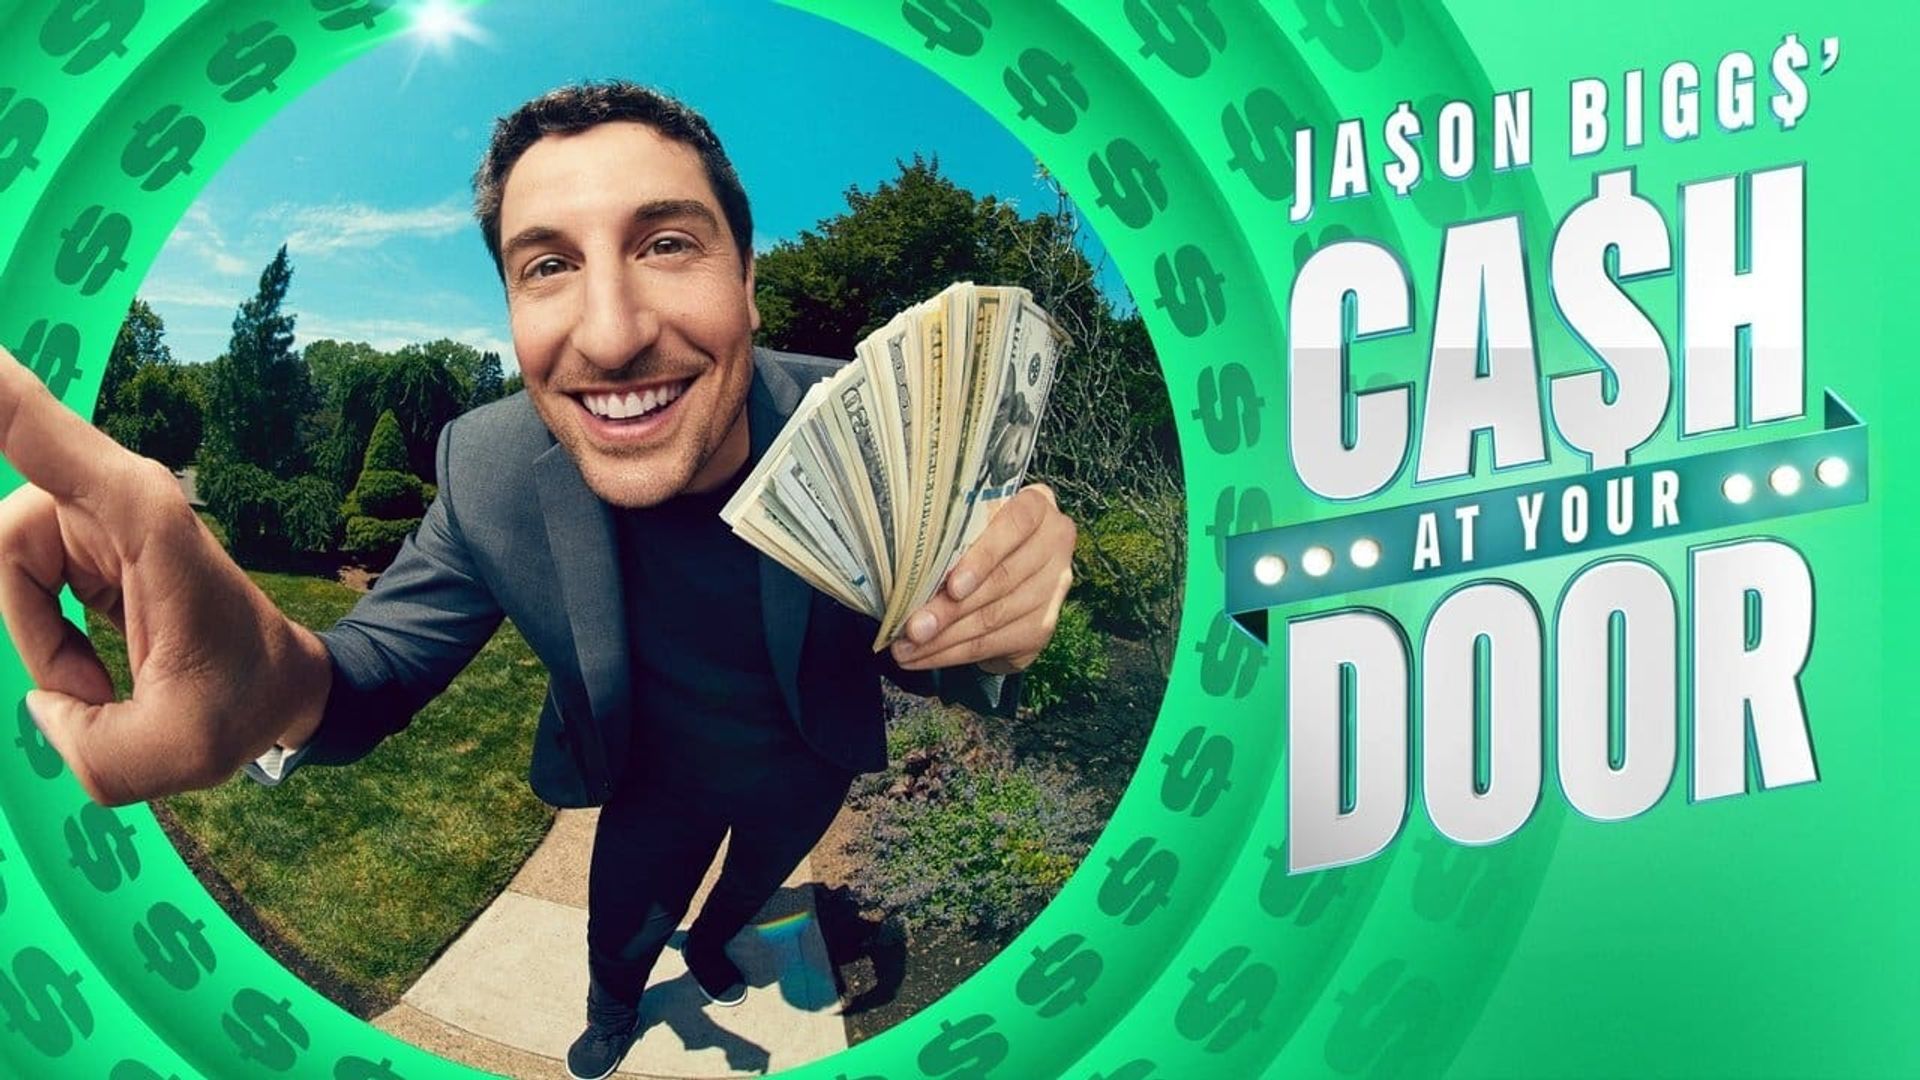 Jason Biggs' Cash at Your Door background